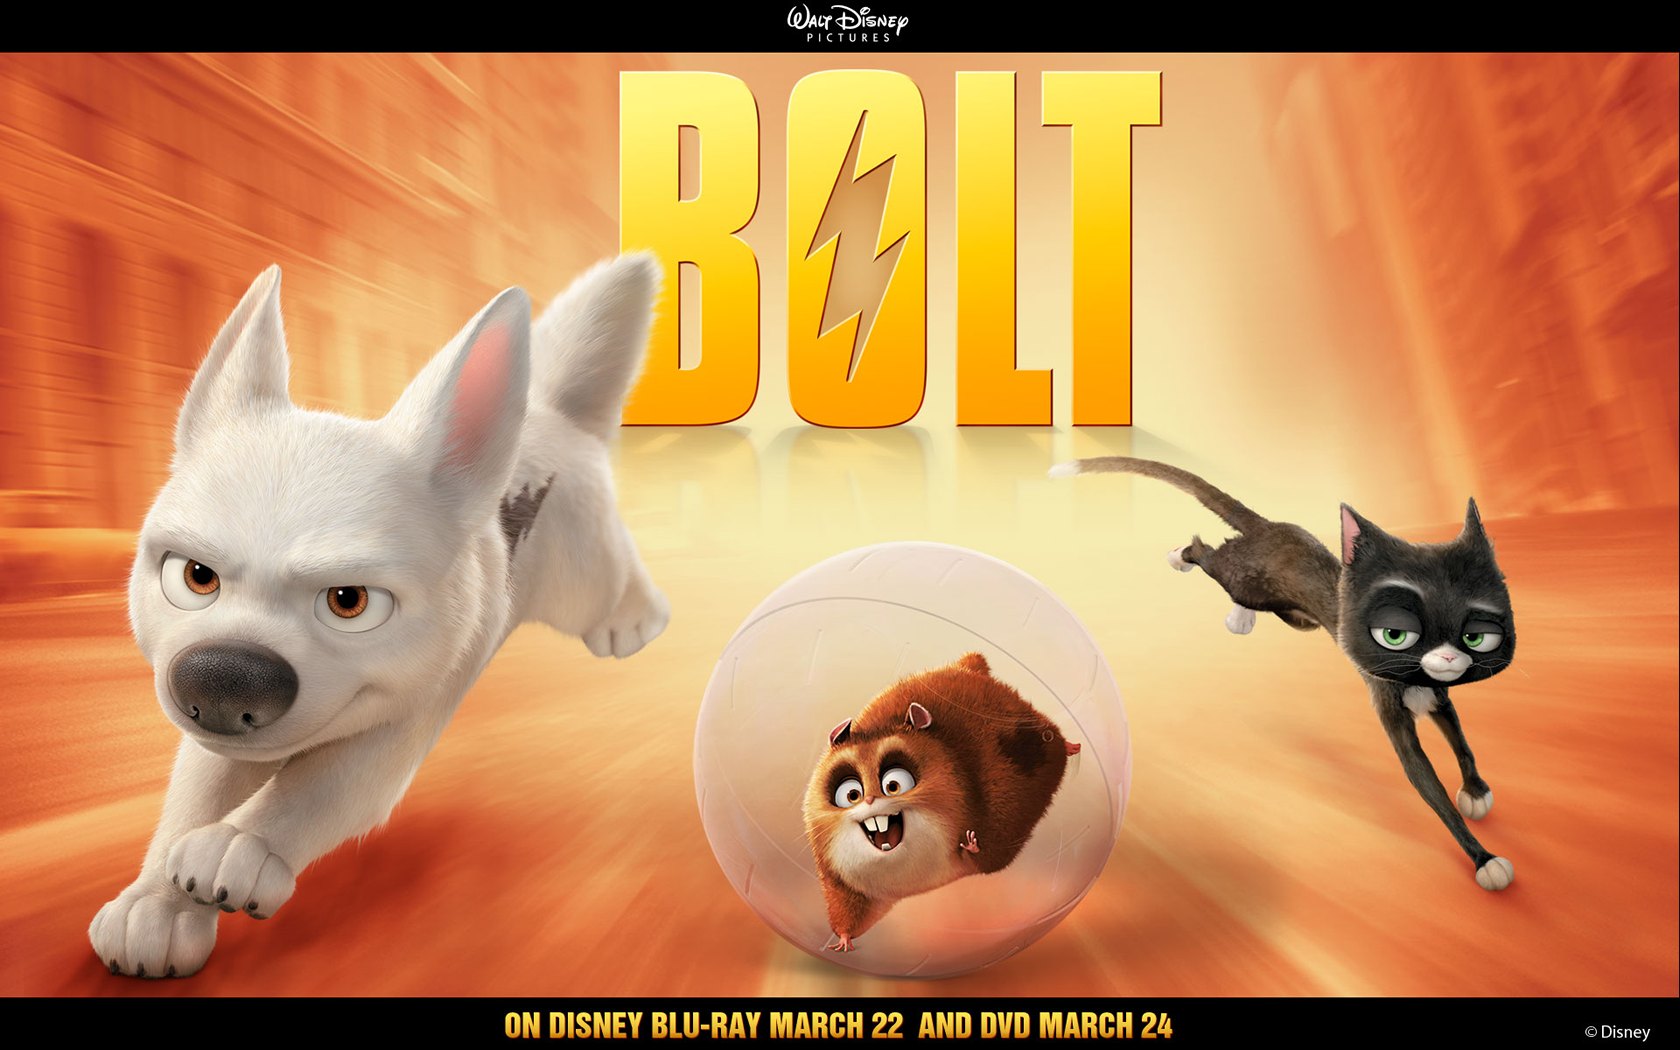 "Bolt" desktop wallpaper number 2 (1680 x 1050 pixels)